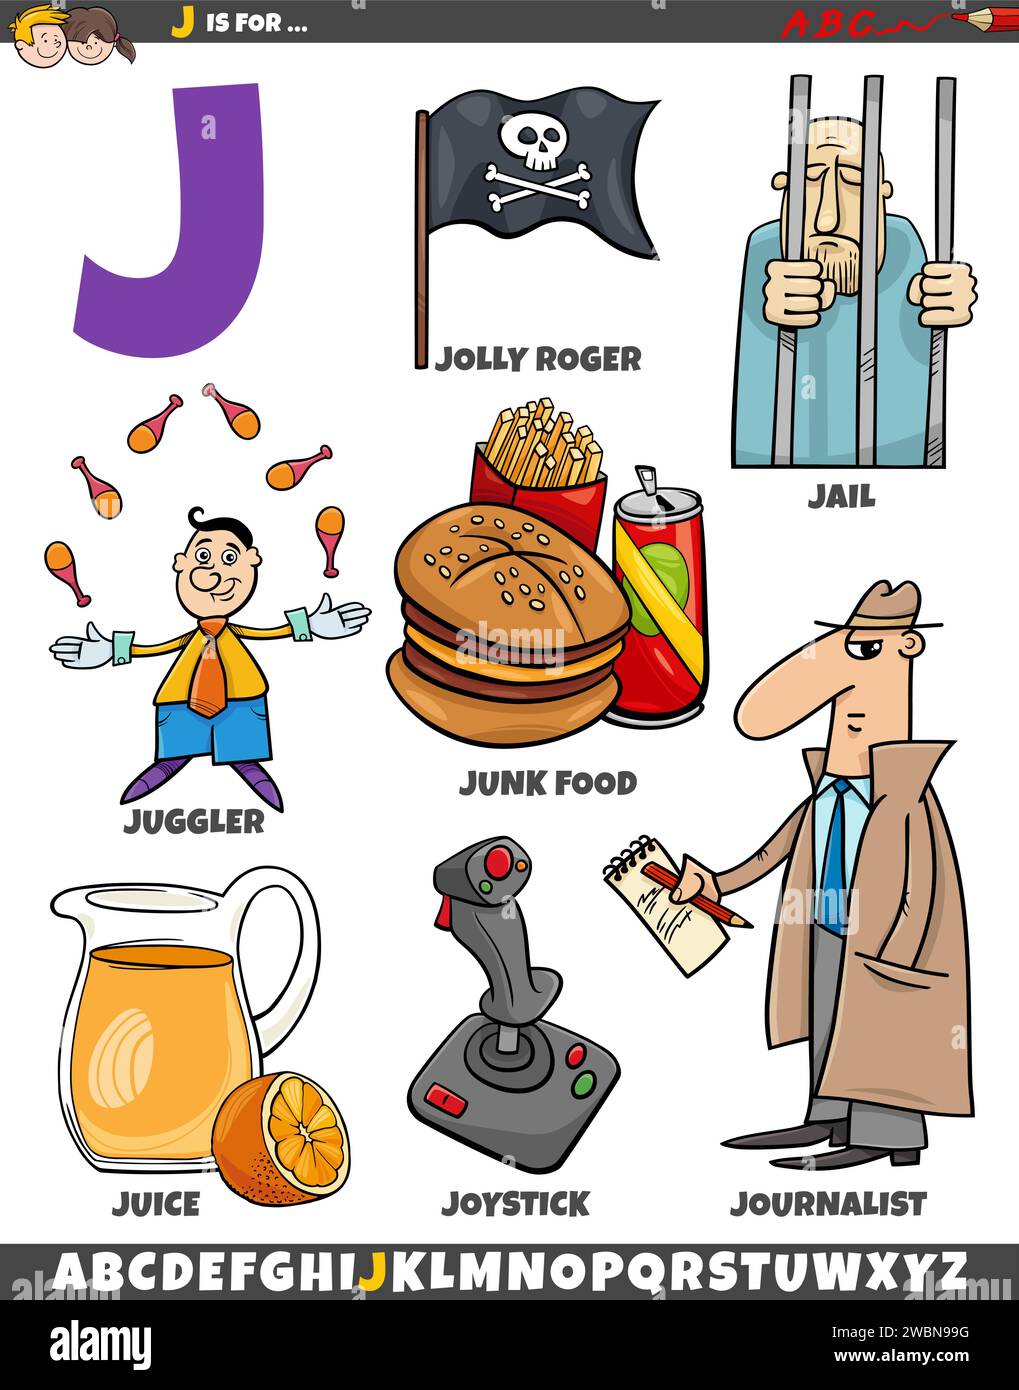 Illustration de dessin animé d'objets et de caractères définis pour la lettre J. Illustration de Vecteur